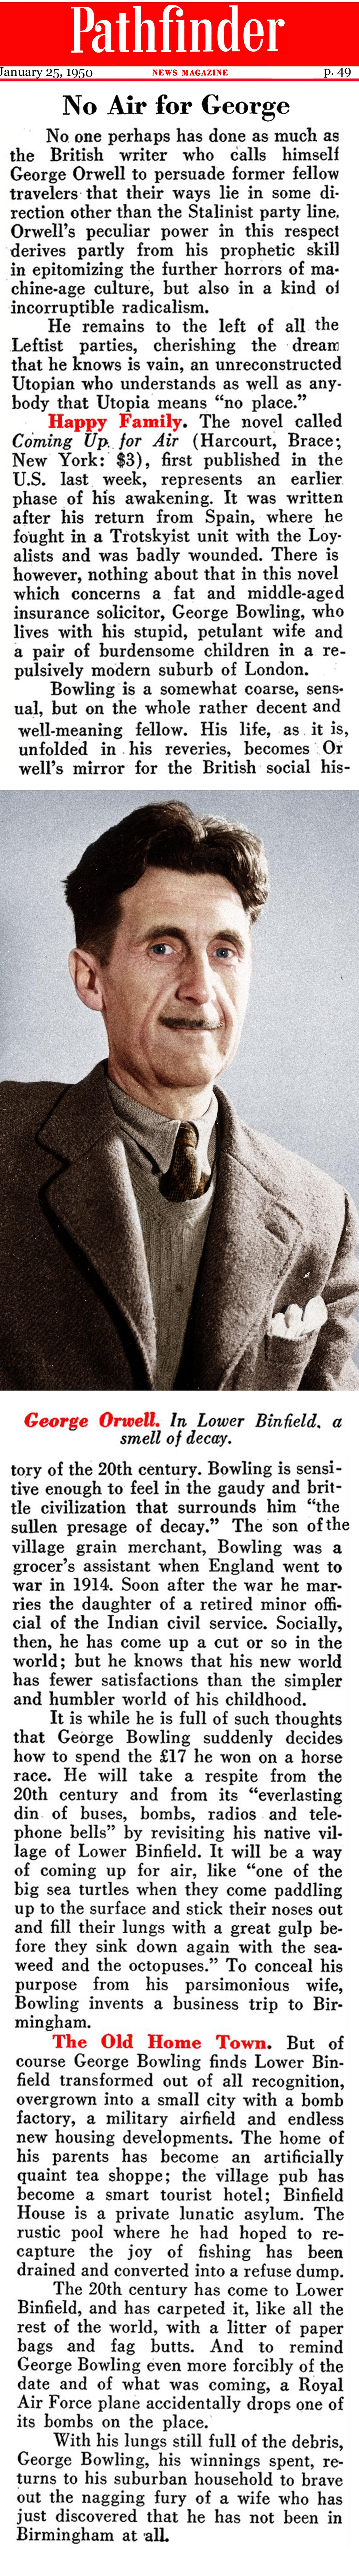 George Orwell (Pathfinder Magazine, 1950)